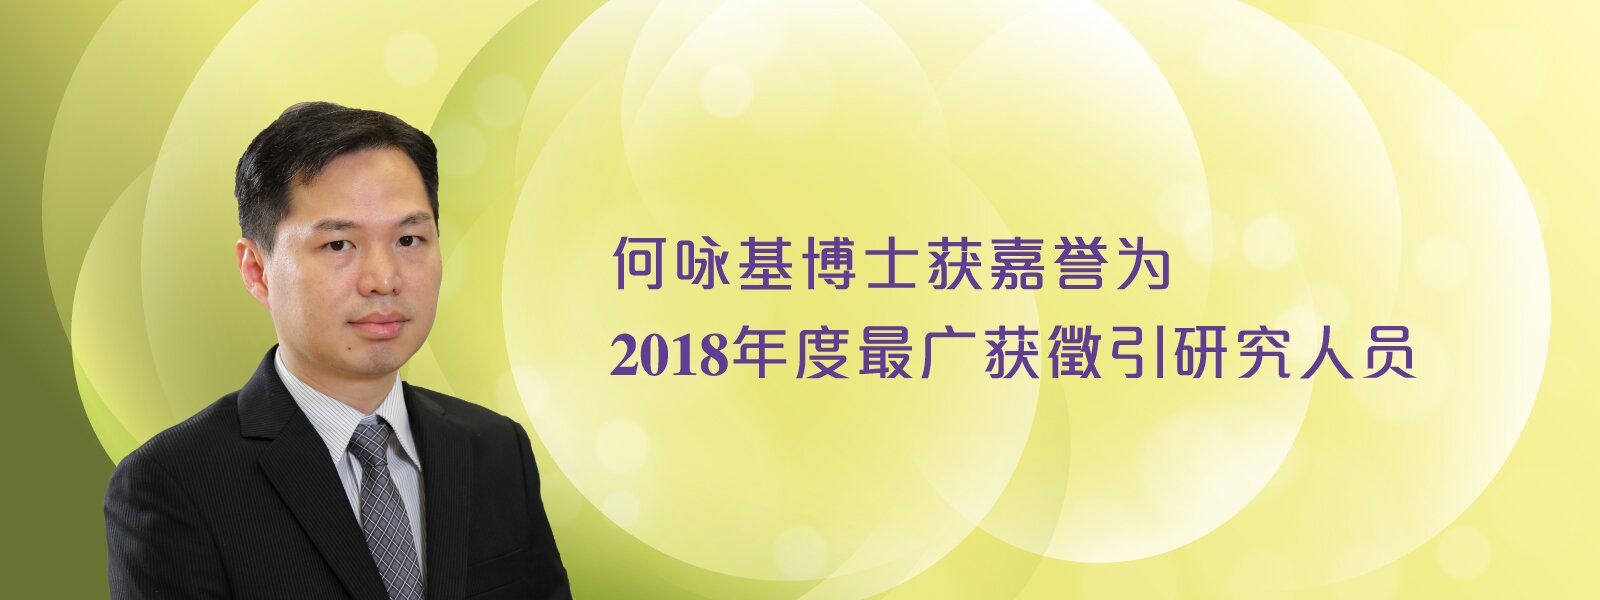 何咏基博士获嘉誉为2018年度最广获征引研究人员